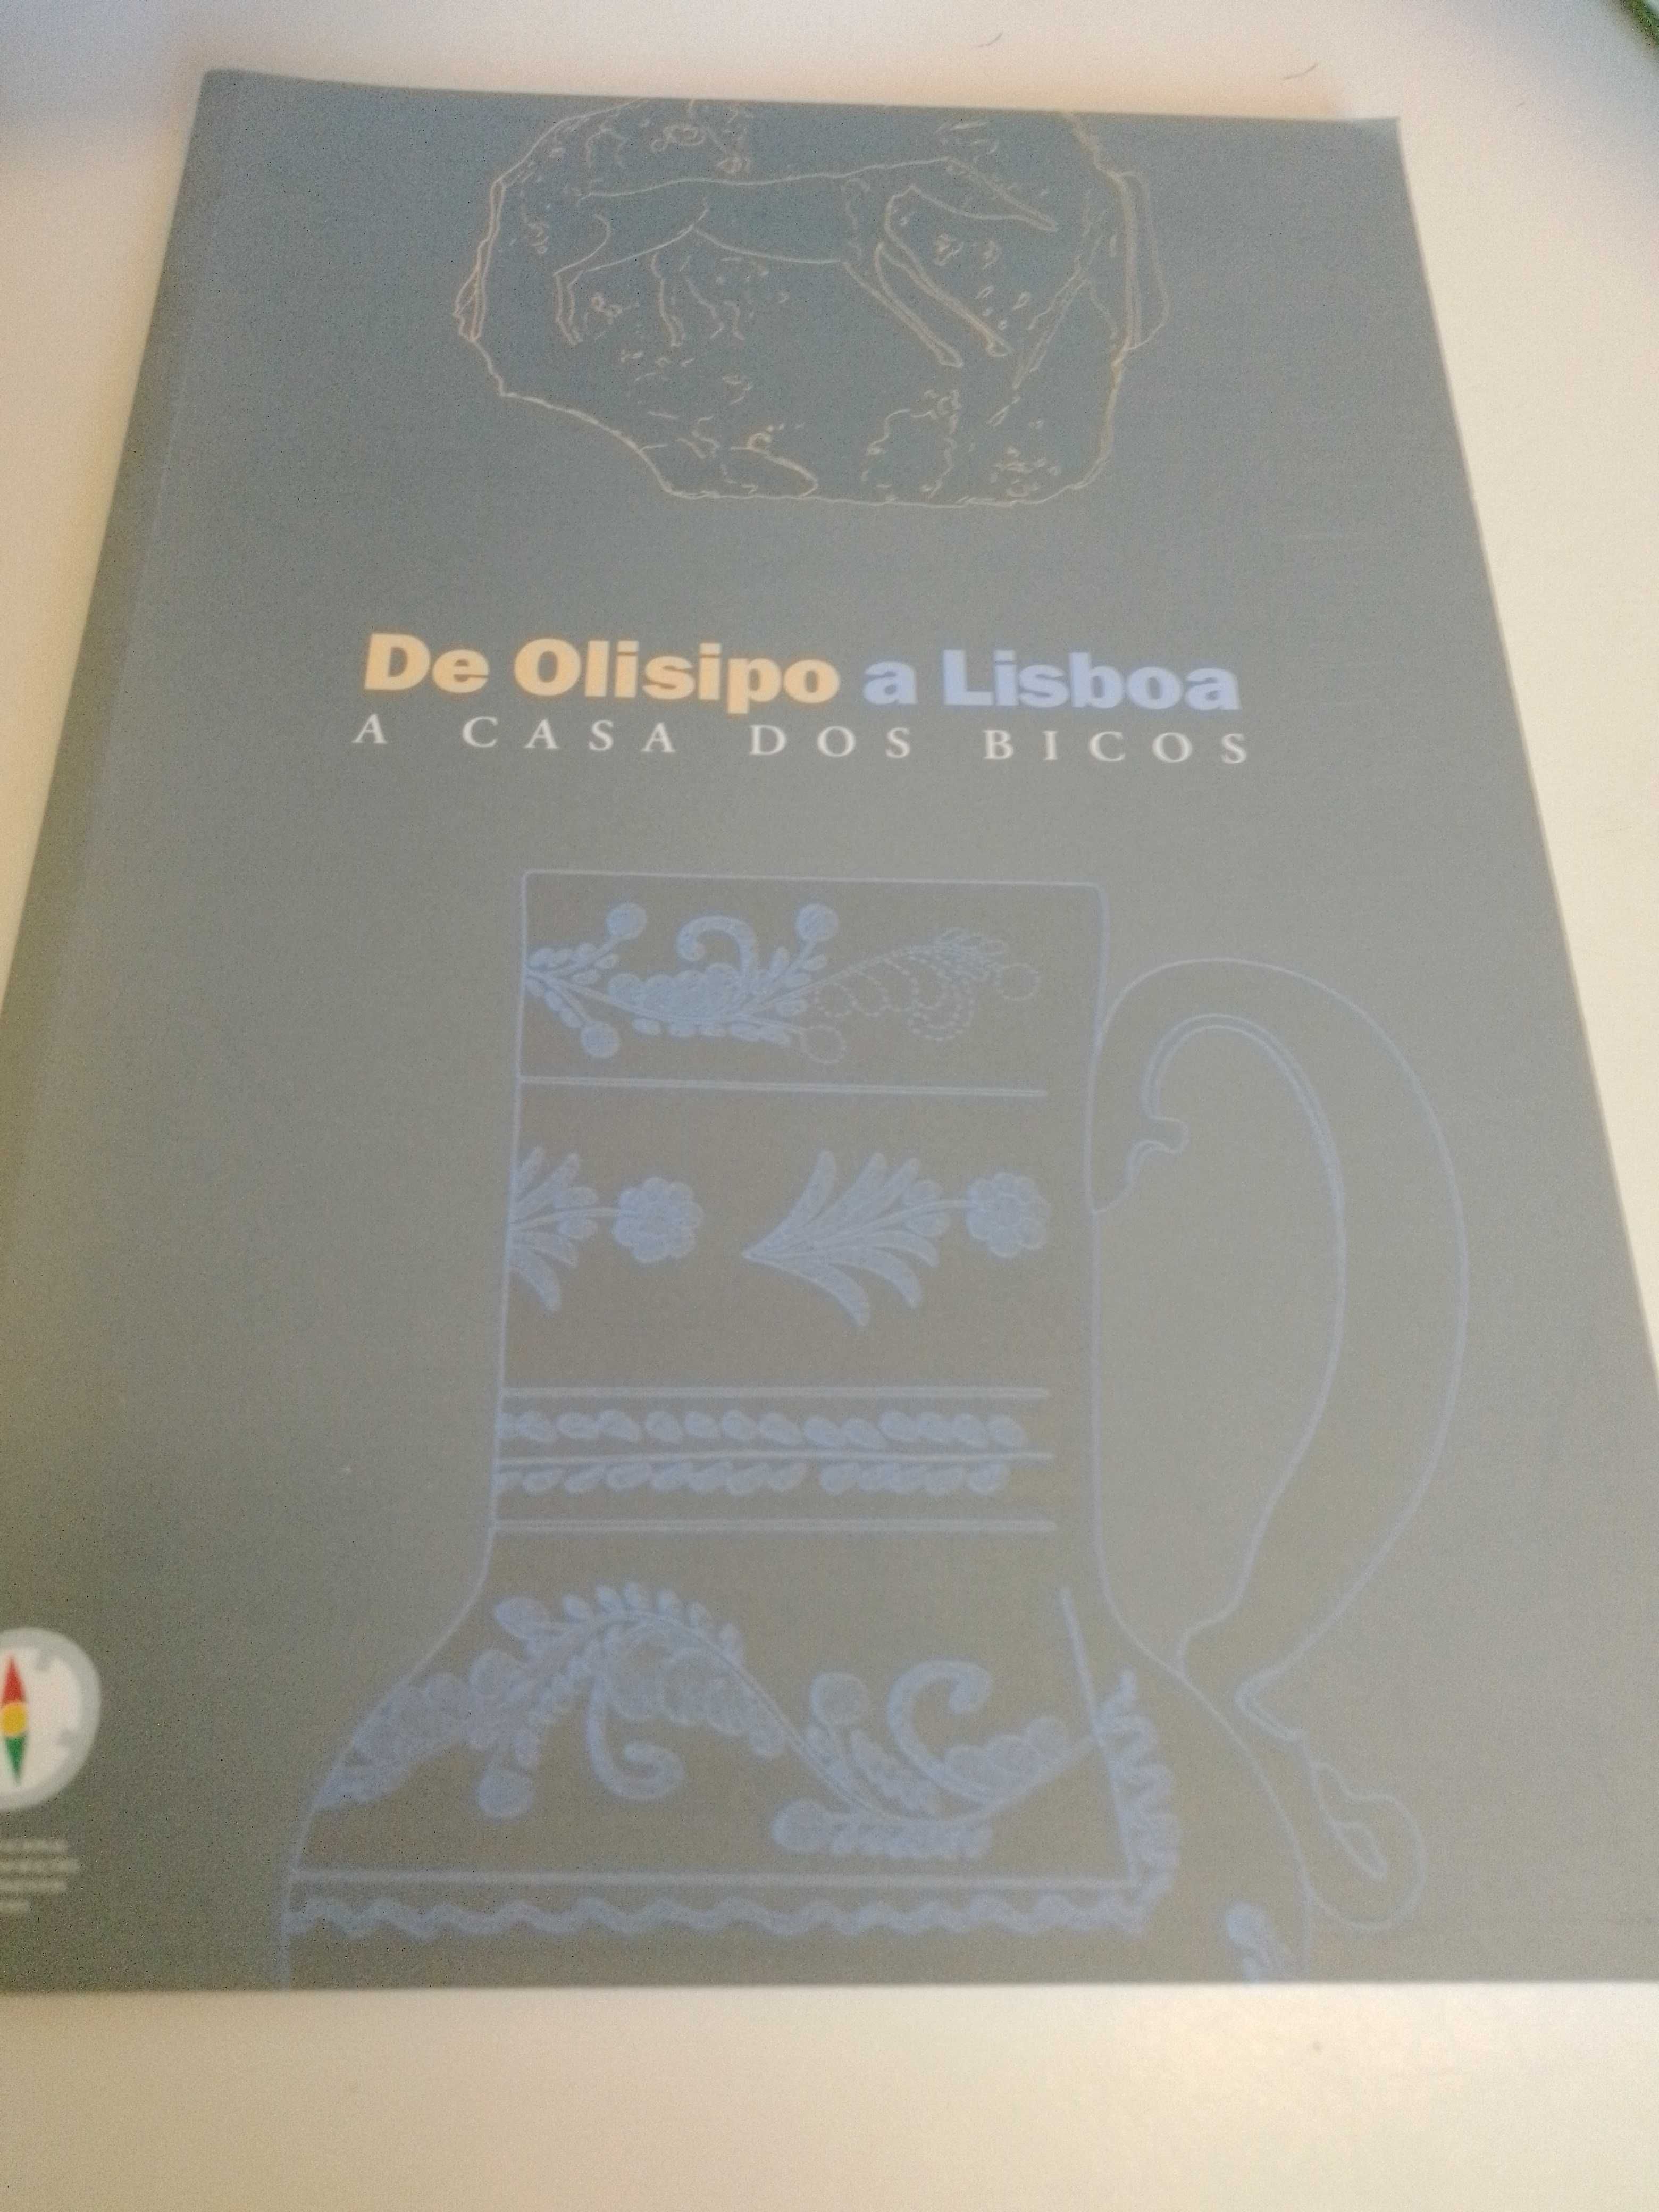 De Olisipo a Lisboa